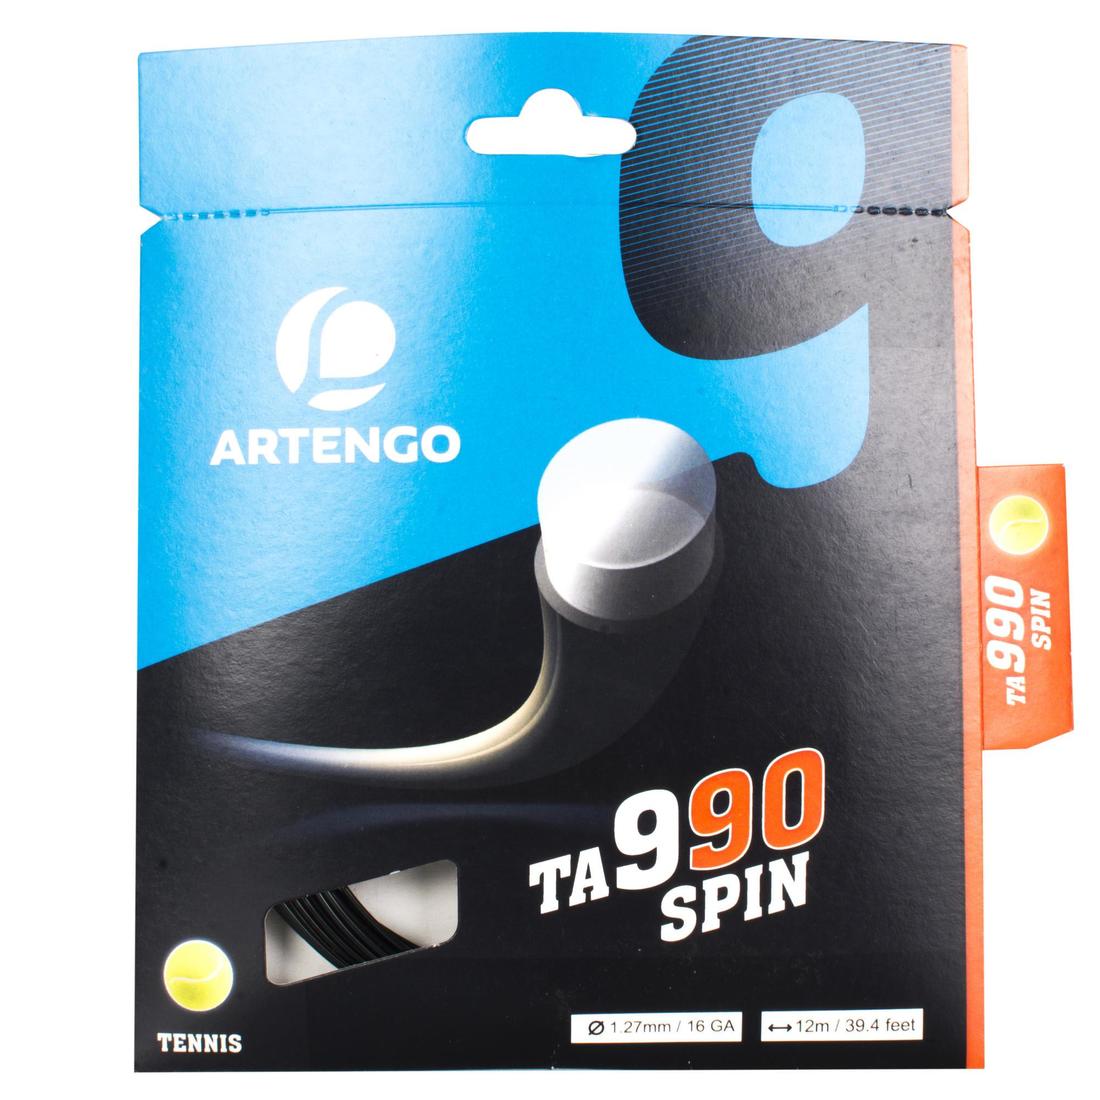 ARTENGO(アルテンゴ) テニス ストリング TA 990 スピン 1.27 モノフィラメント